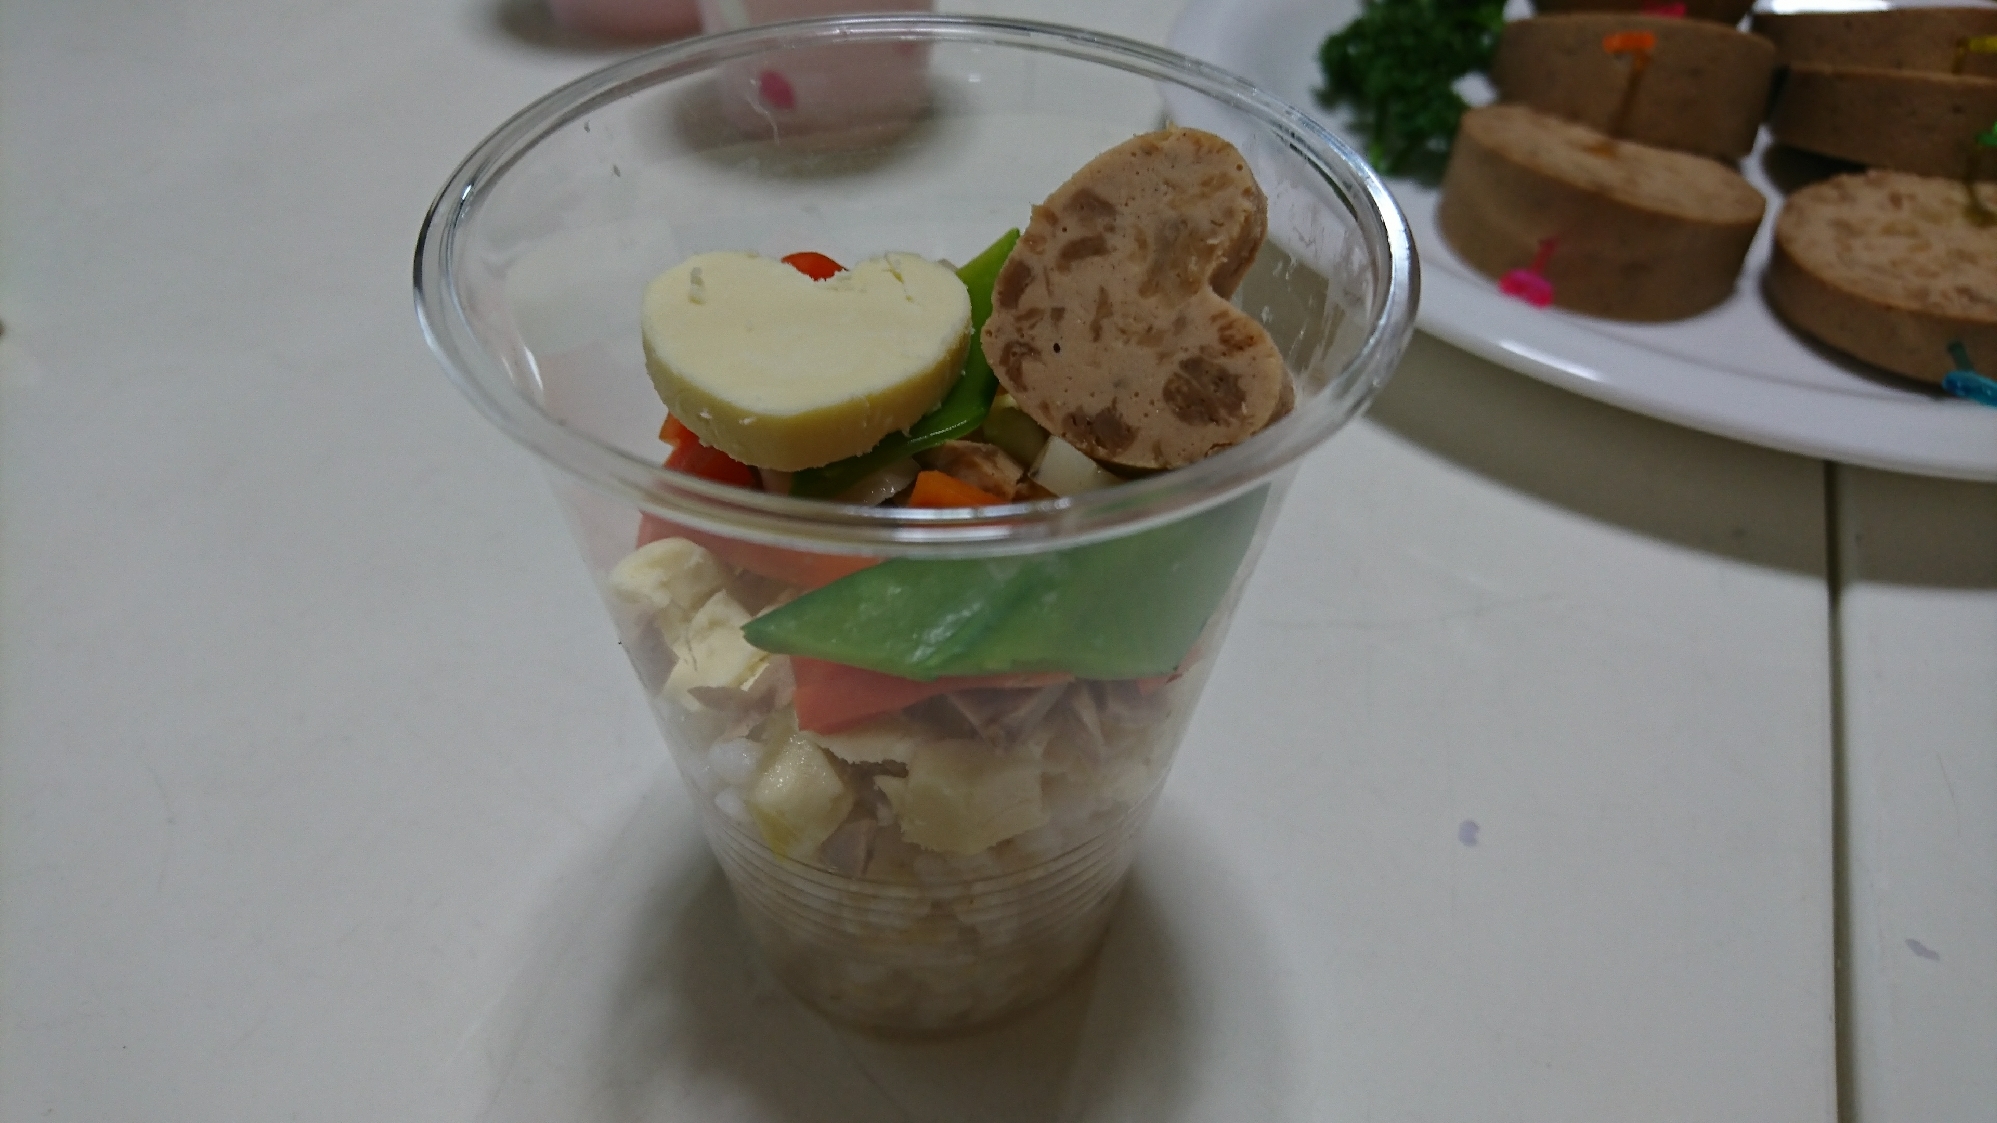 カップちらし寿司・茹で野菜のマリネリメイク